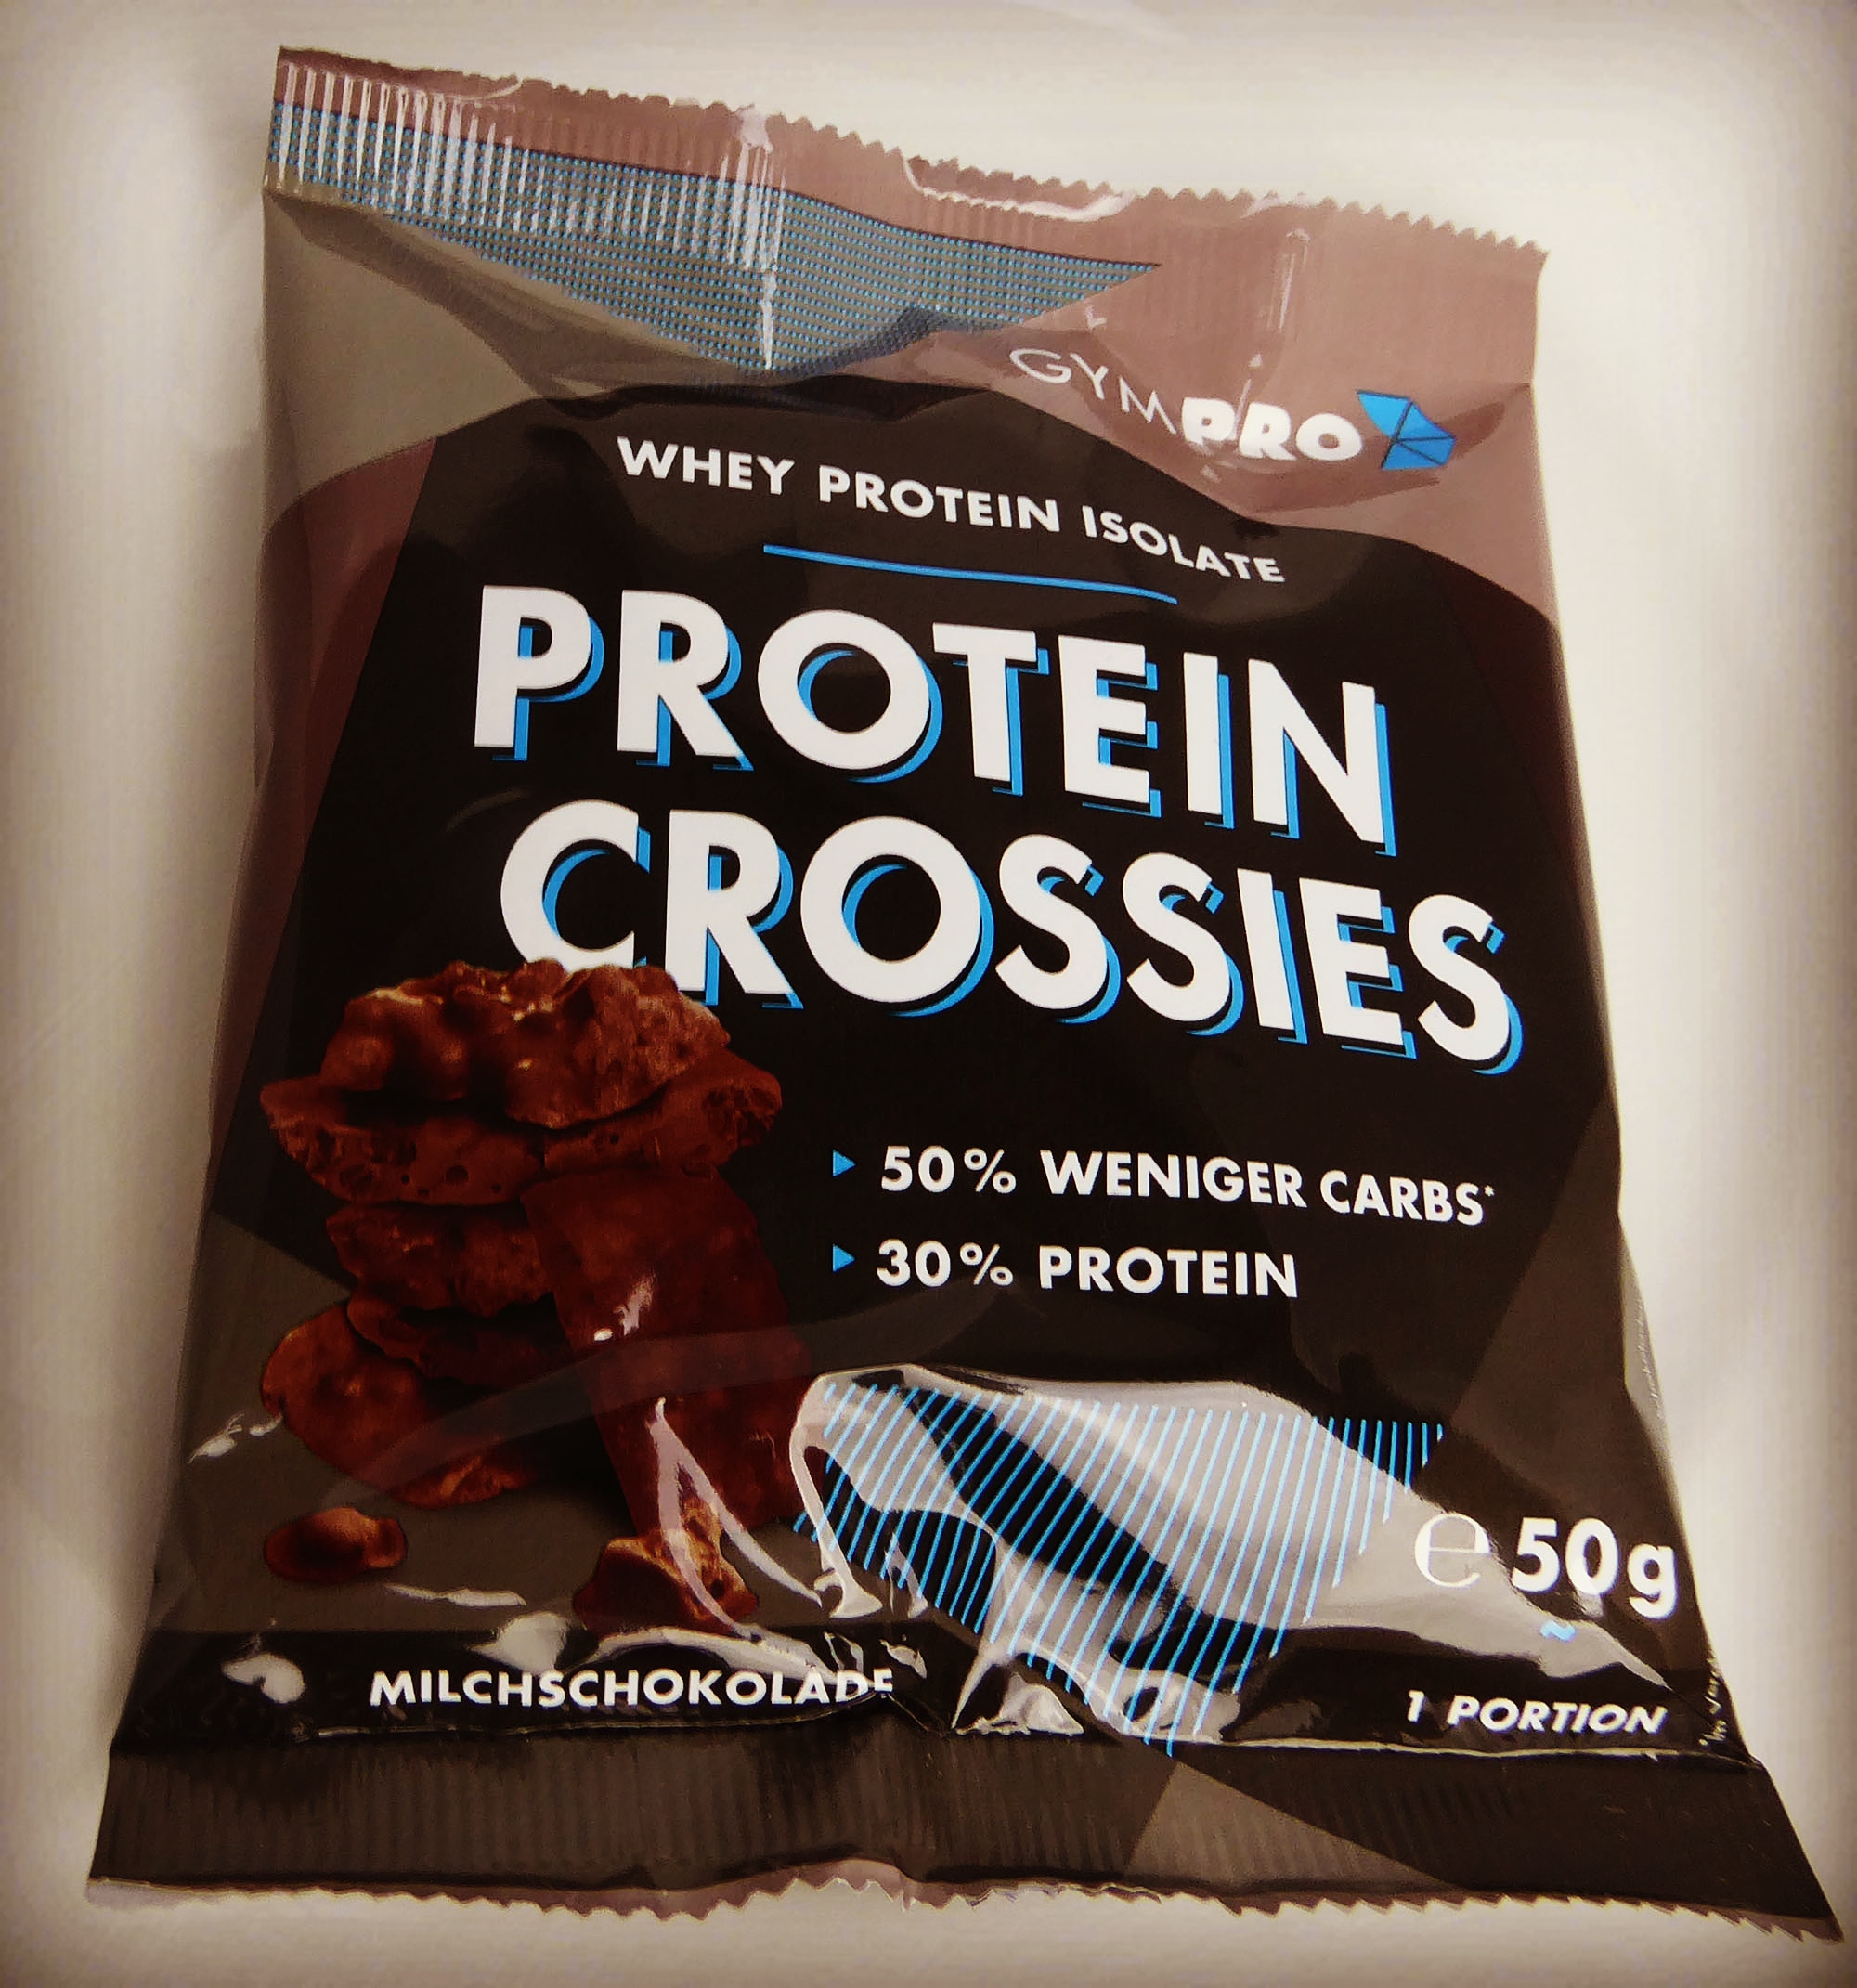 GymPro Protein Crossies Milchschokolade Proteinriegel Eiweiß Eiweißriegel